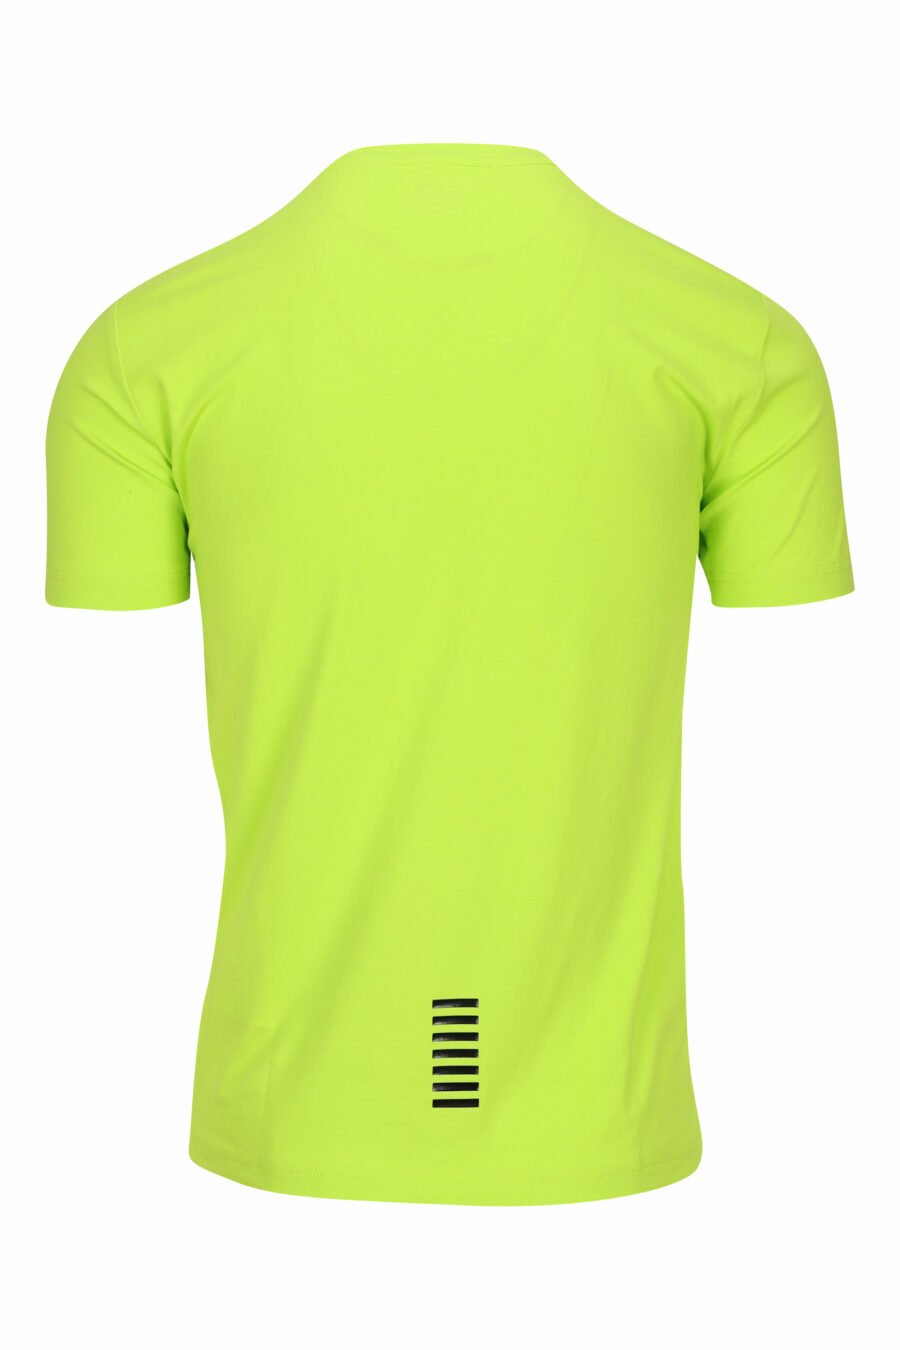 T-shirt verde-limão com mini logótipo "lux identity" em borracha - 8058947458301 1